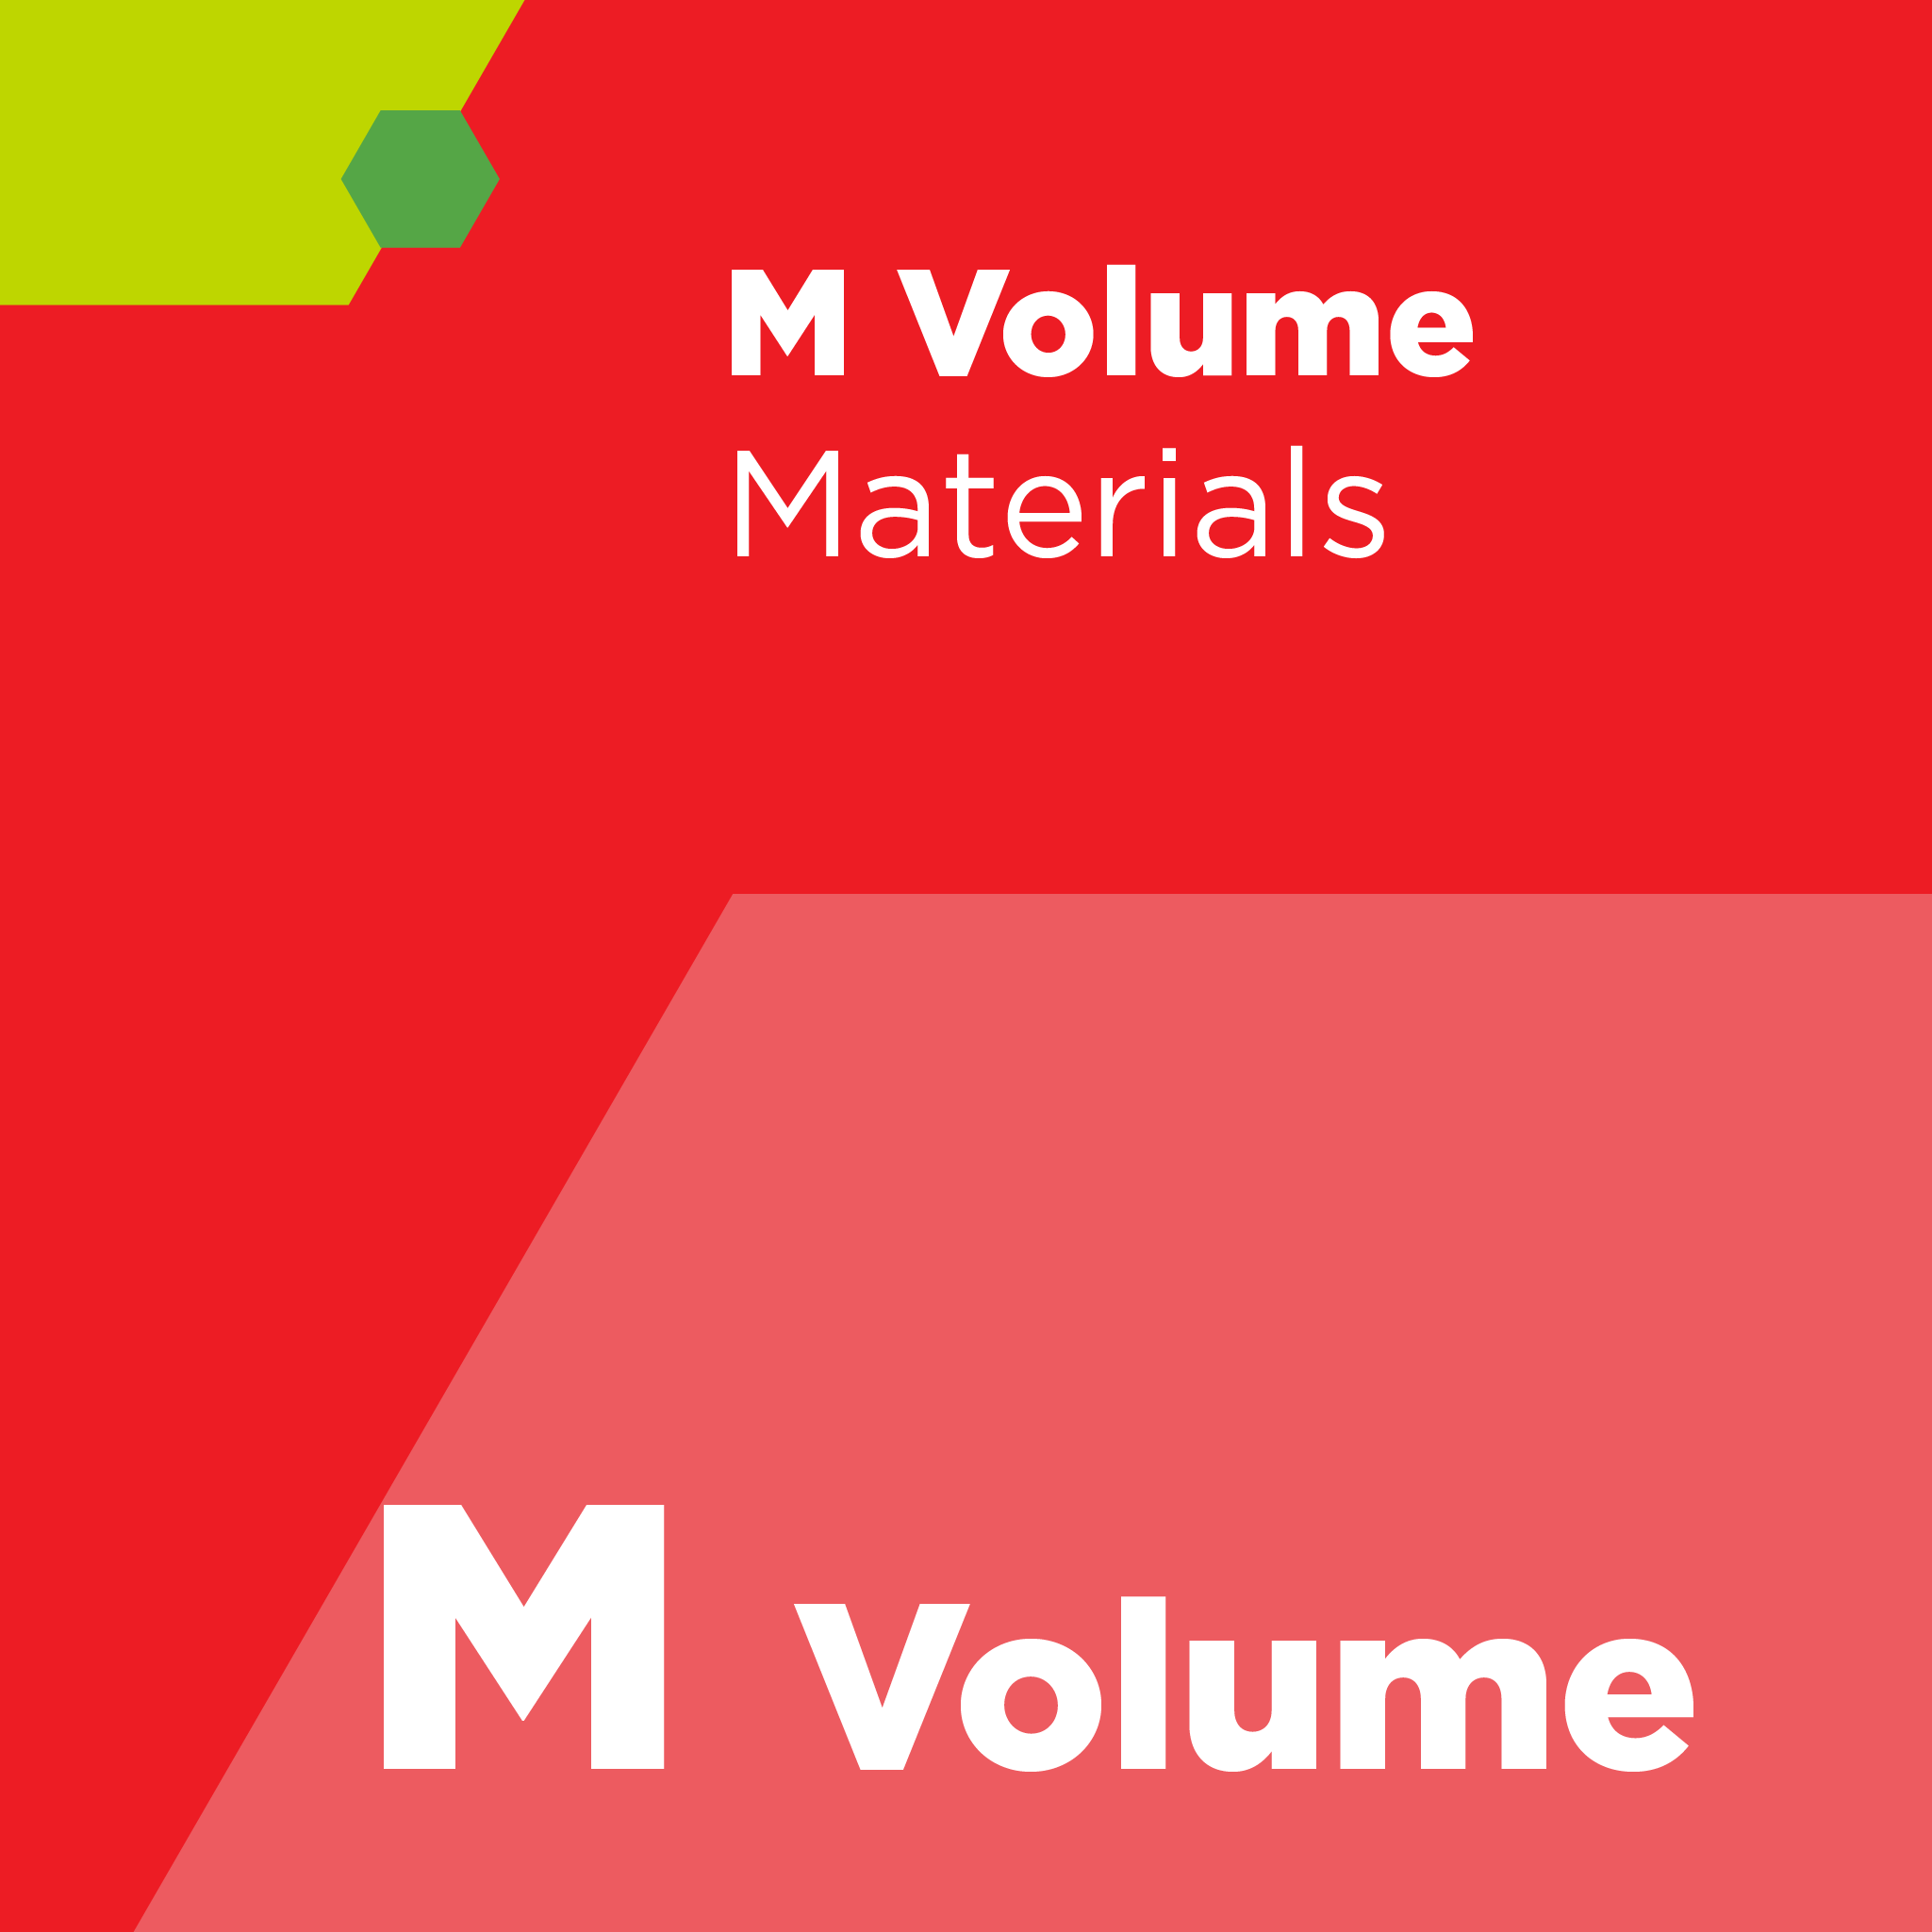 M01400 - SEMI M14 - 半絶縁ガリウムヒ素単結晶のためのイオン注入及び活性化プロセス（仕様）